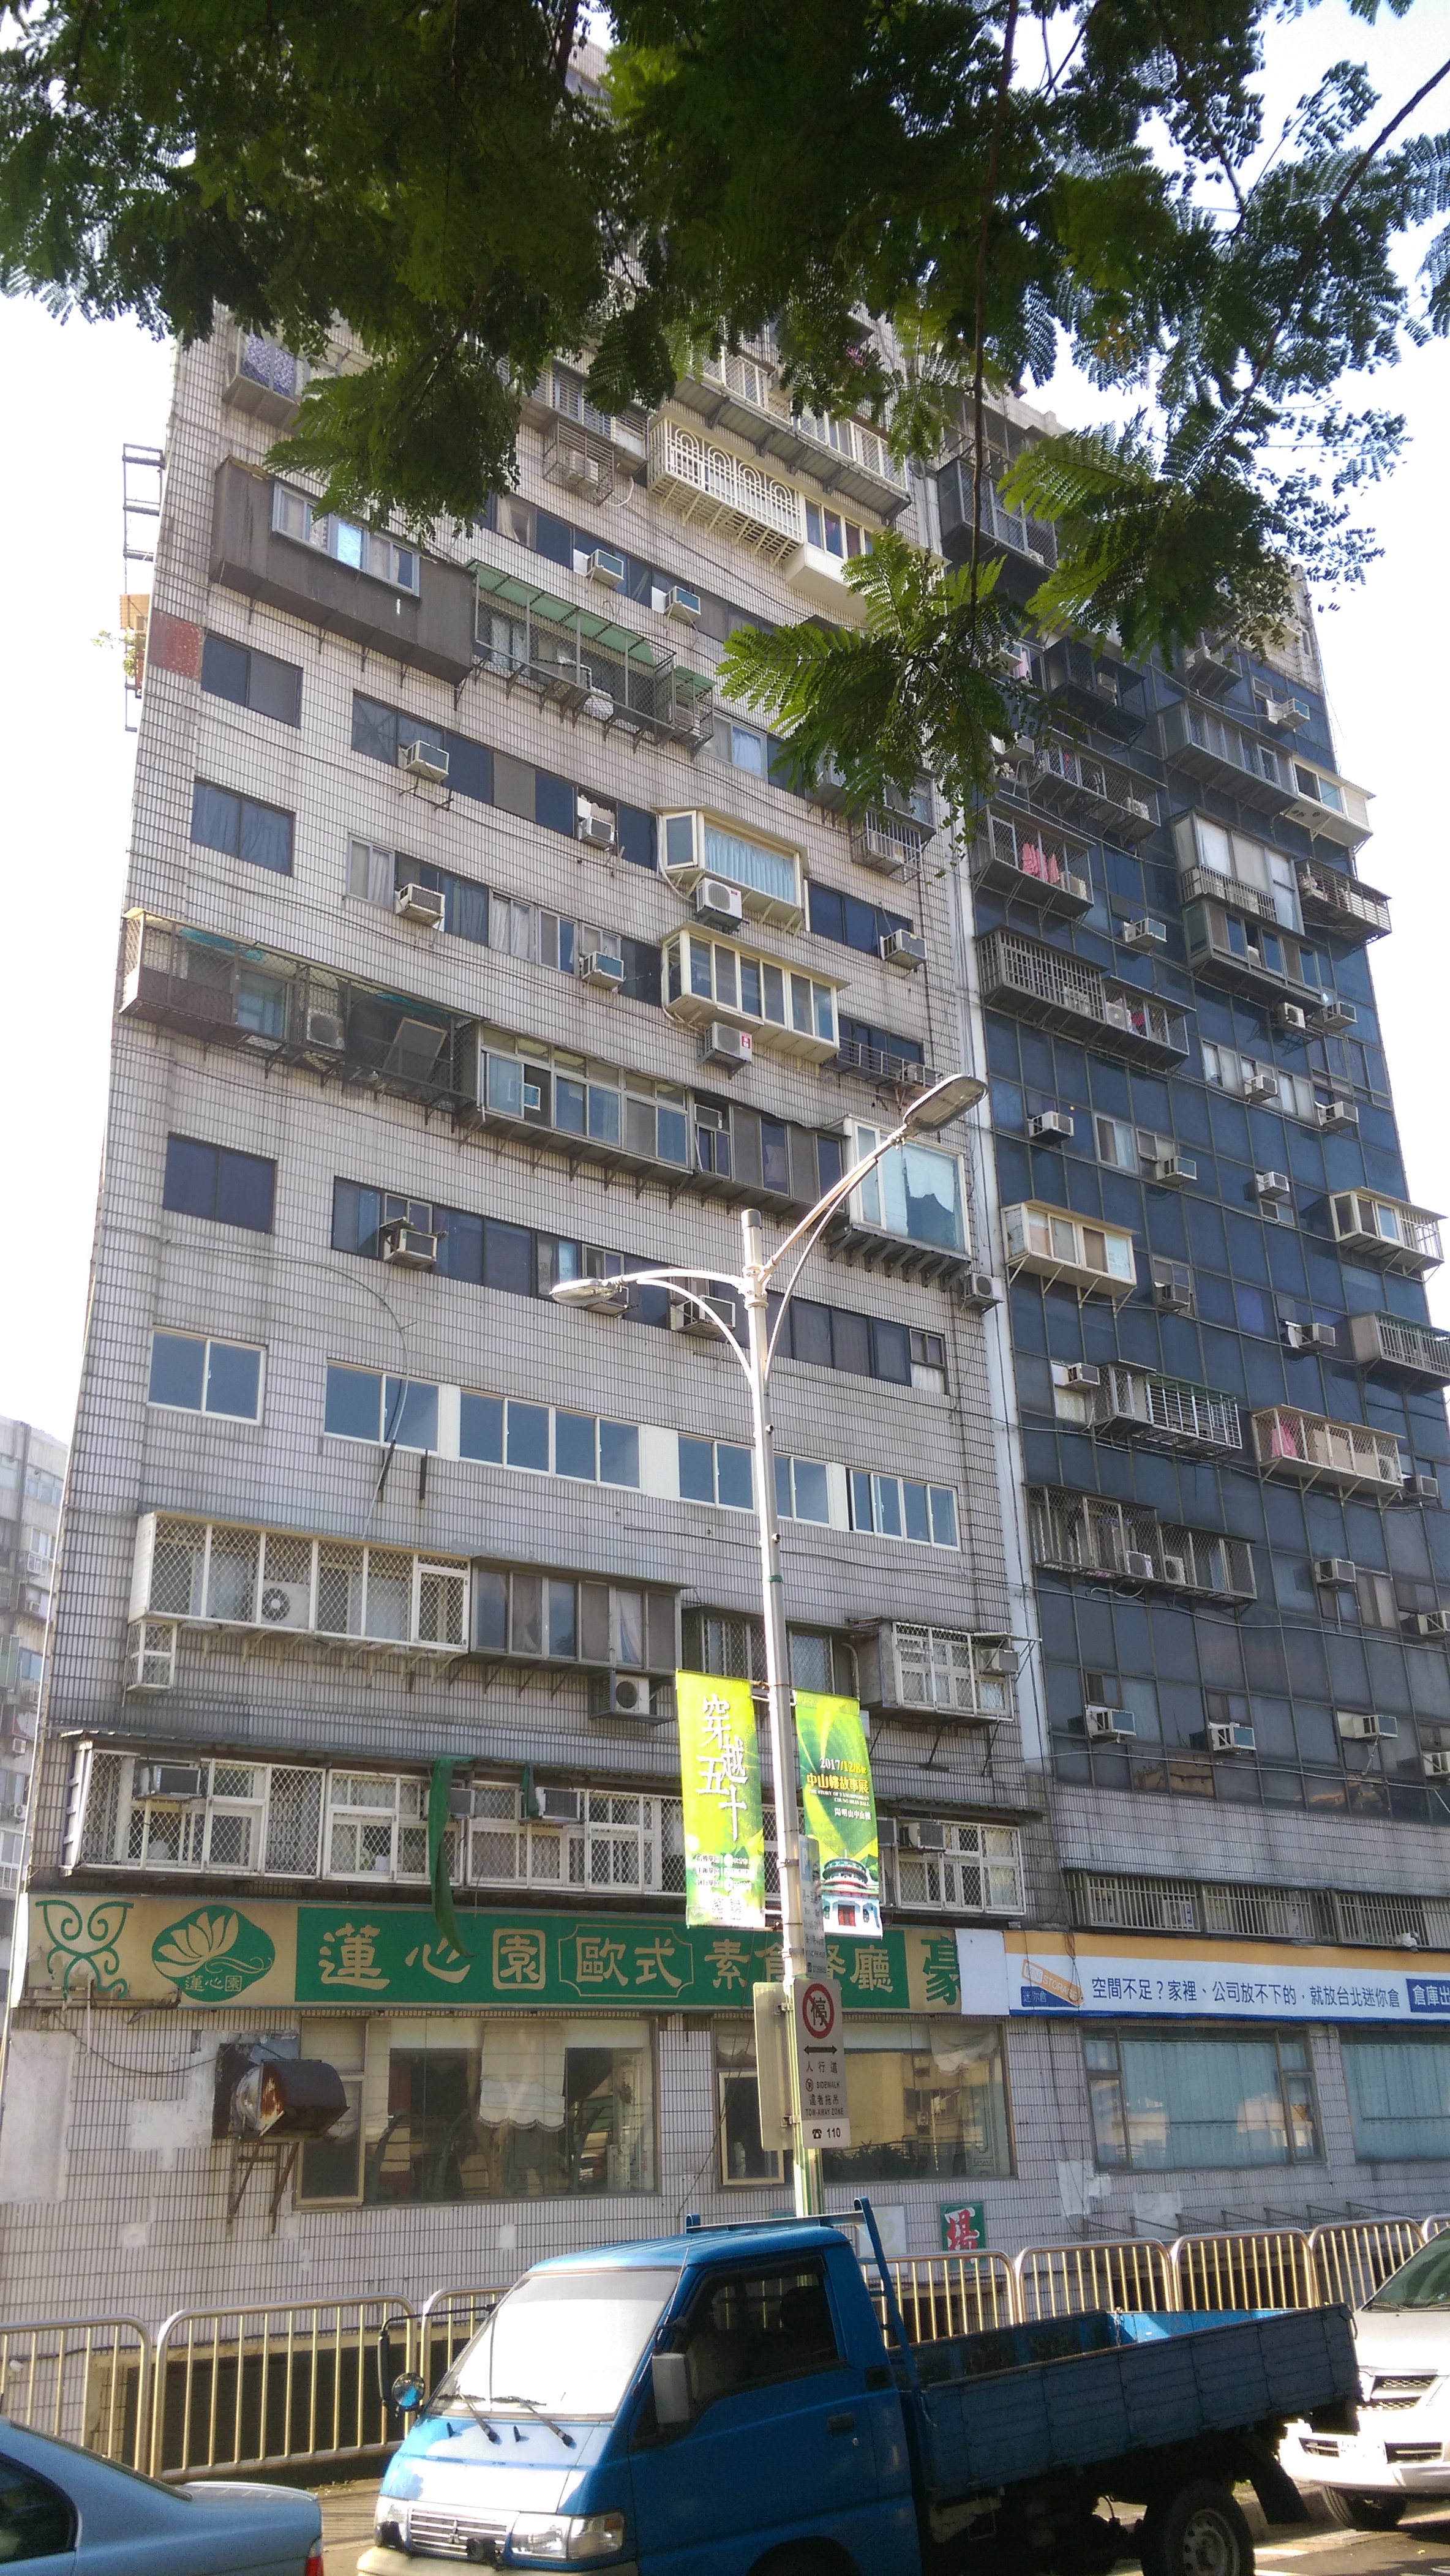 位 於 台 北 市 中 山 區 的 錦 新 大 樓 是 出 了 名 的 凶 宅 ， 但 該 棟 樓 還 是 有 不 少 交 易 案 。 